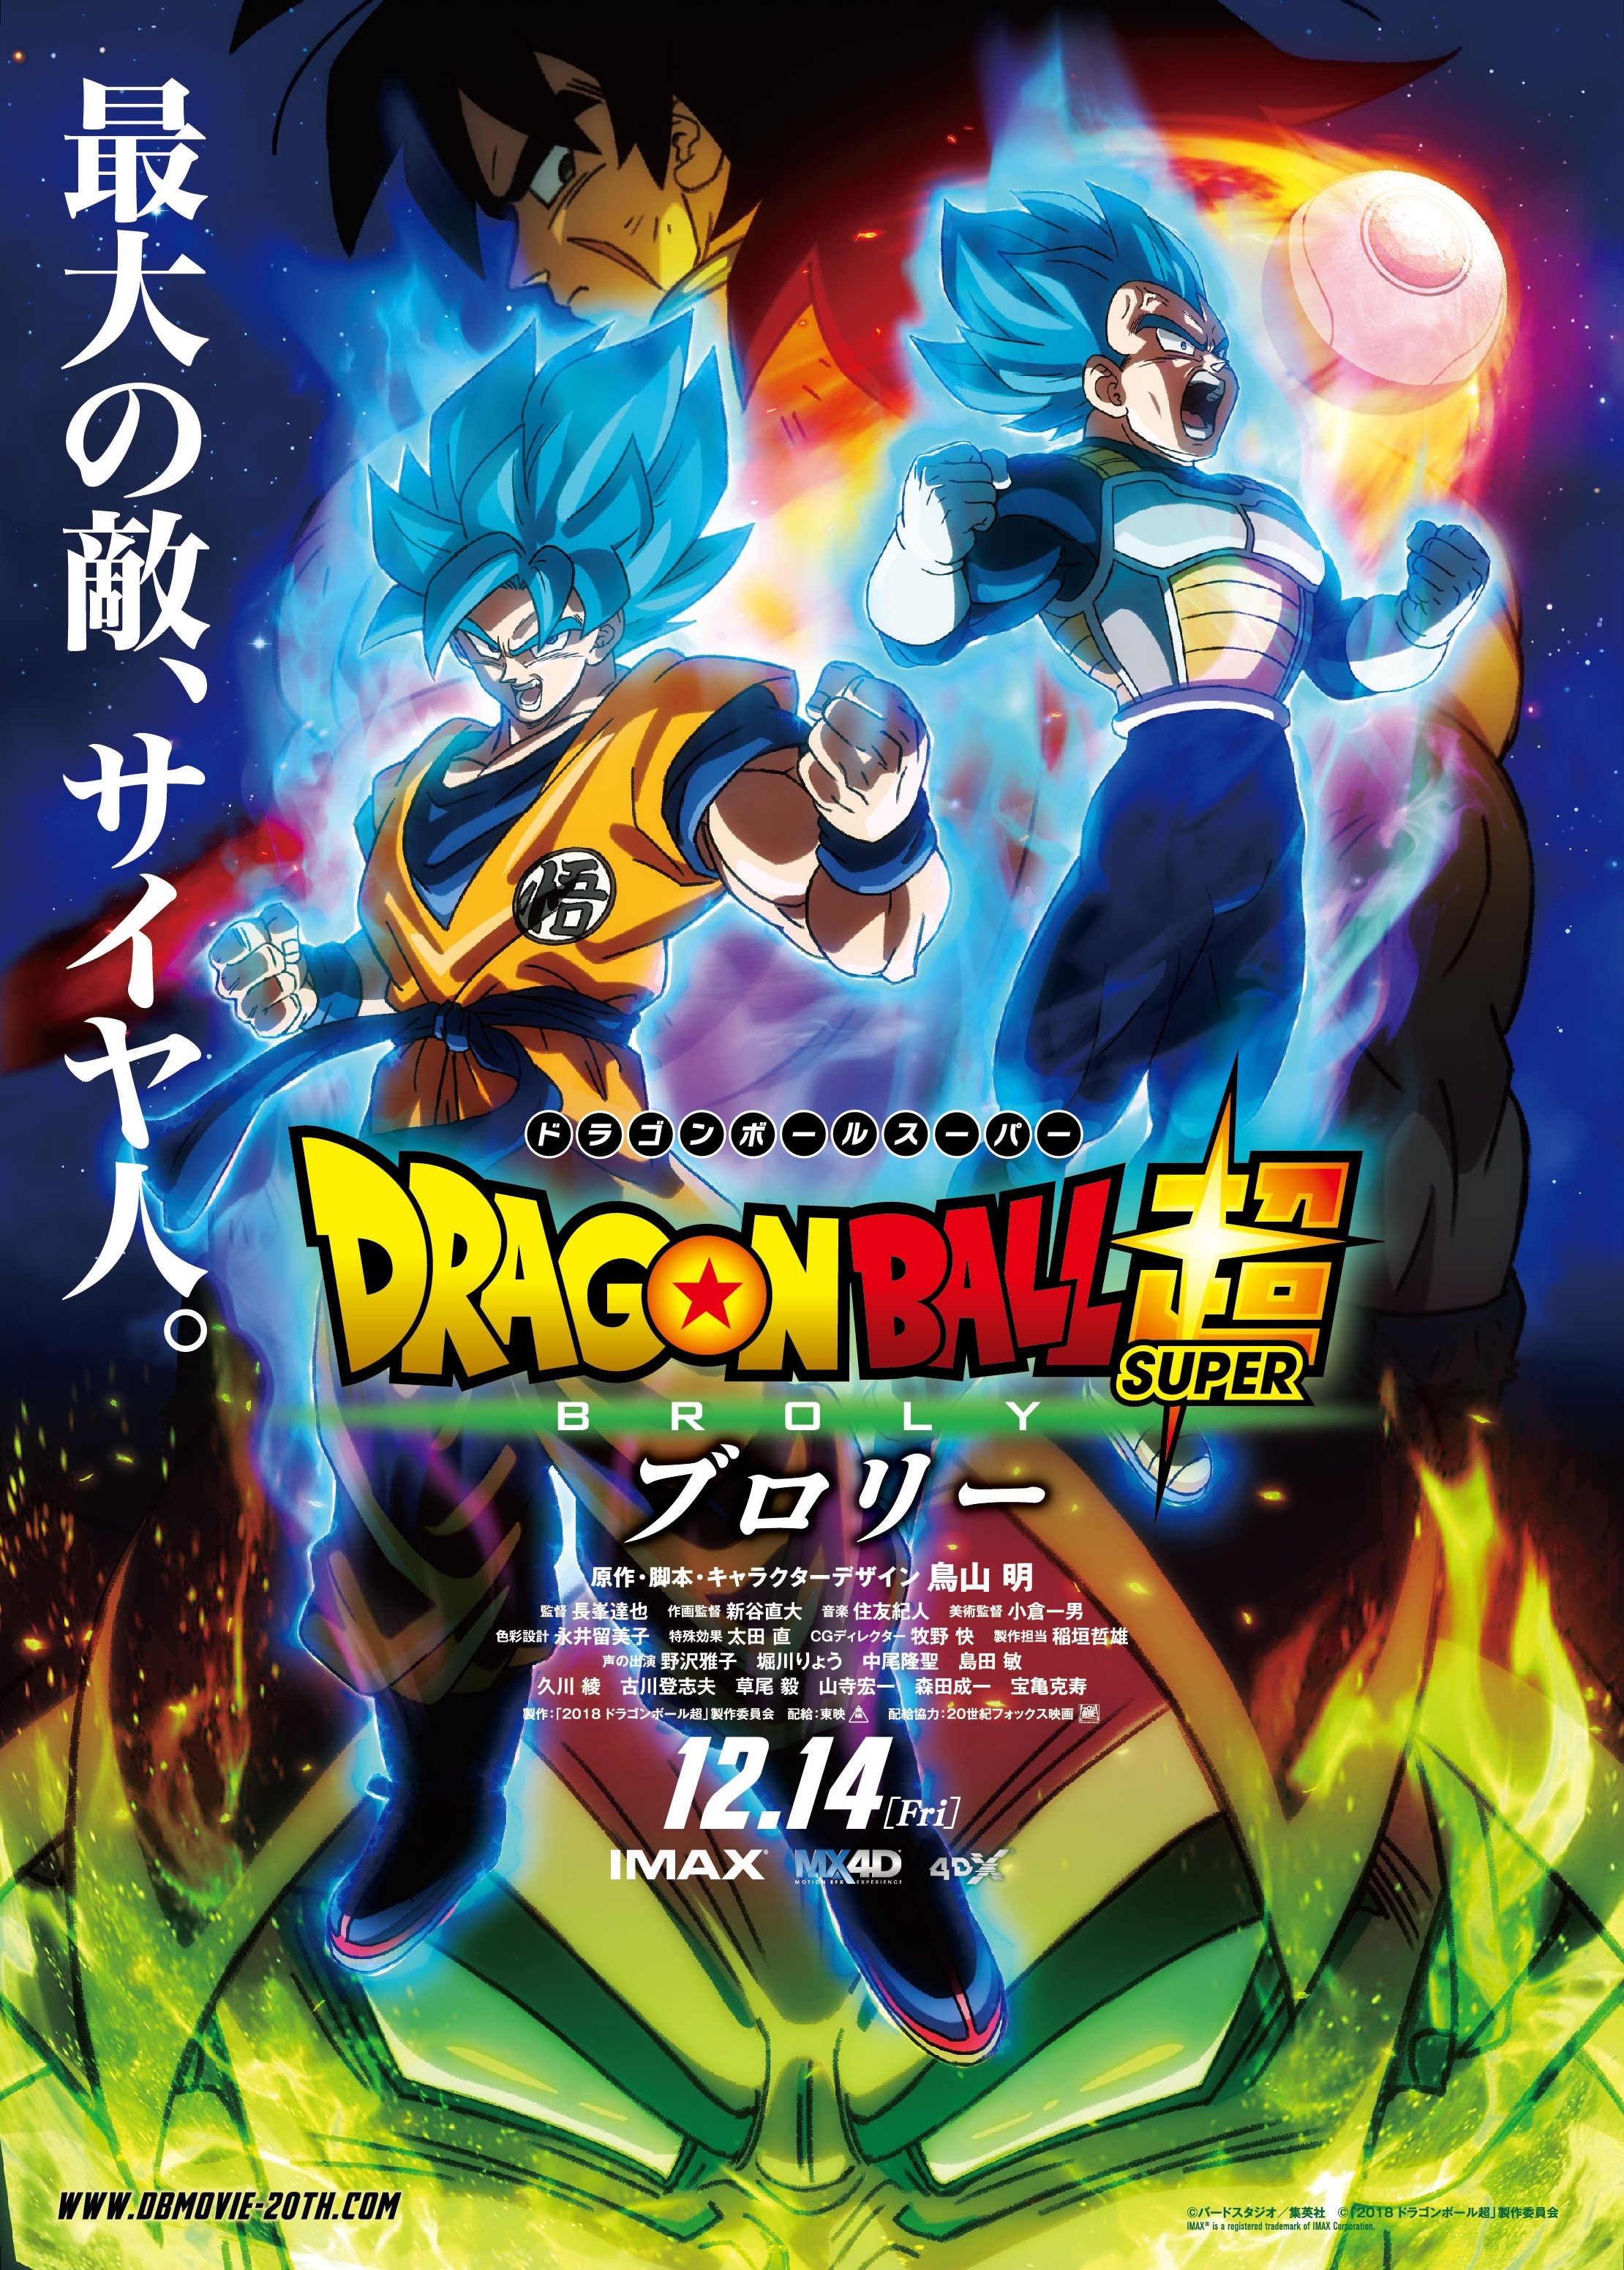 Dragon Ball Z: Battle of Z, Dragon Ball Wiki